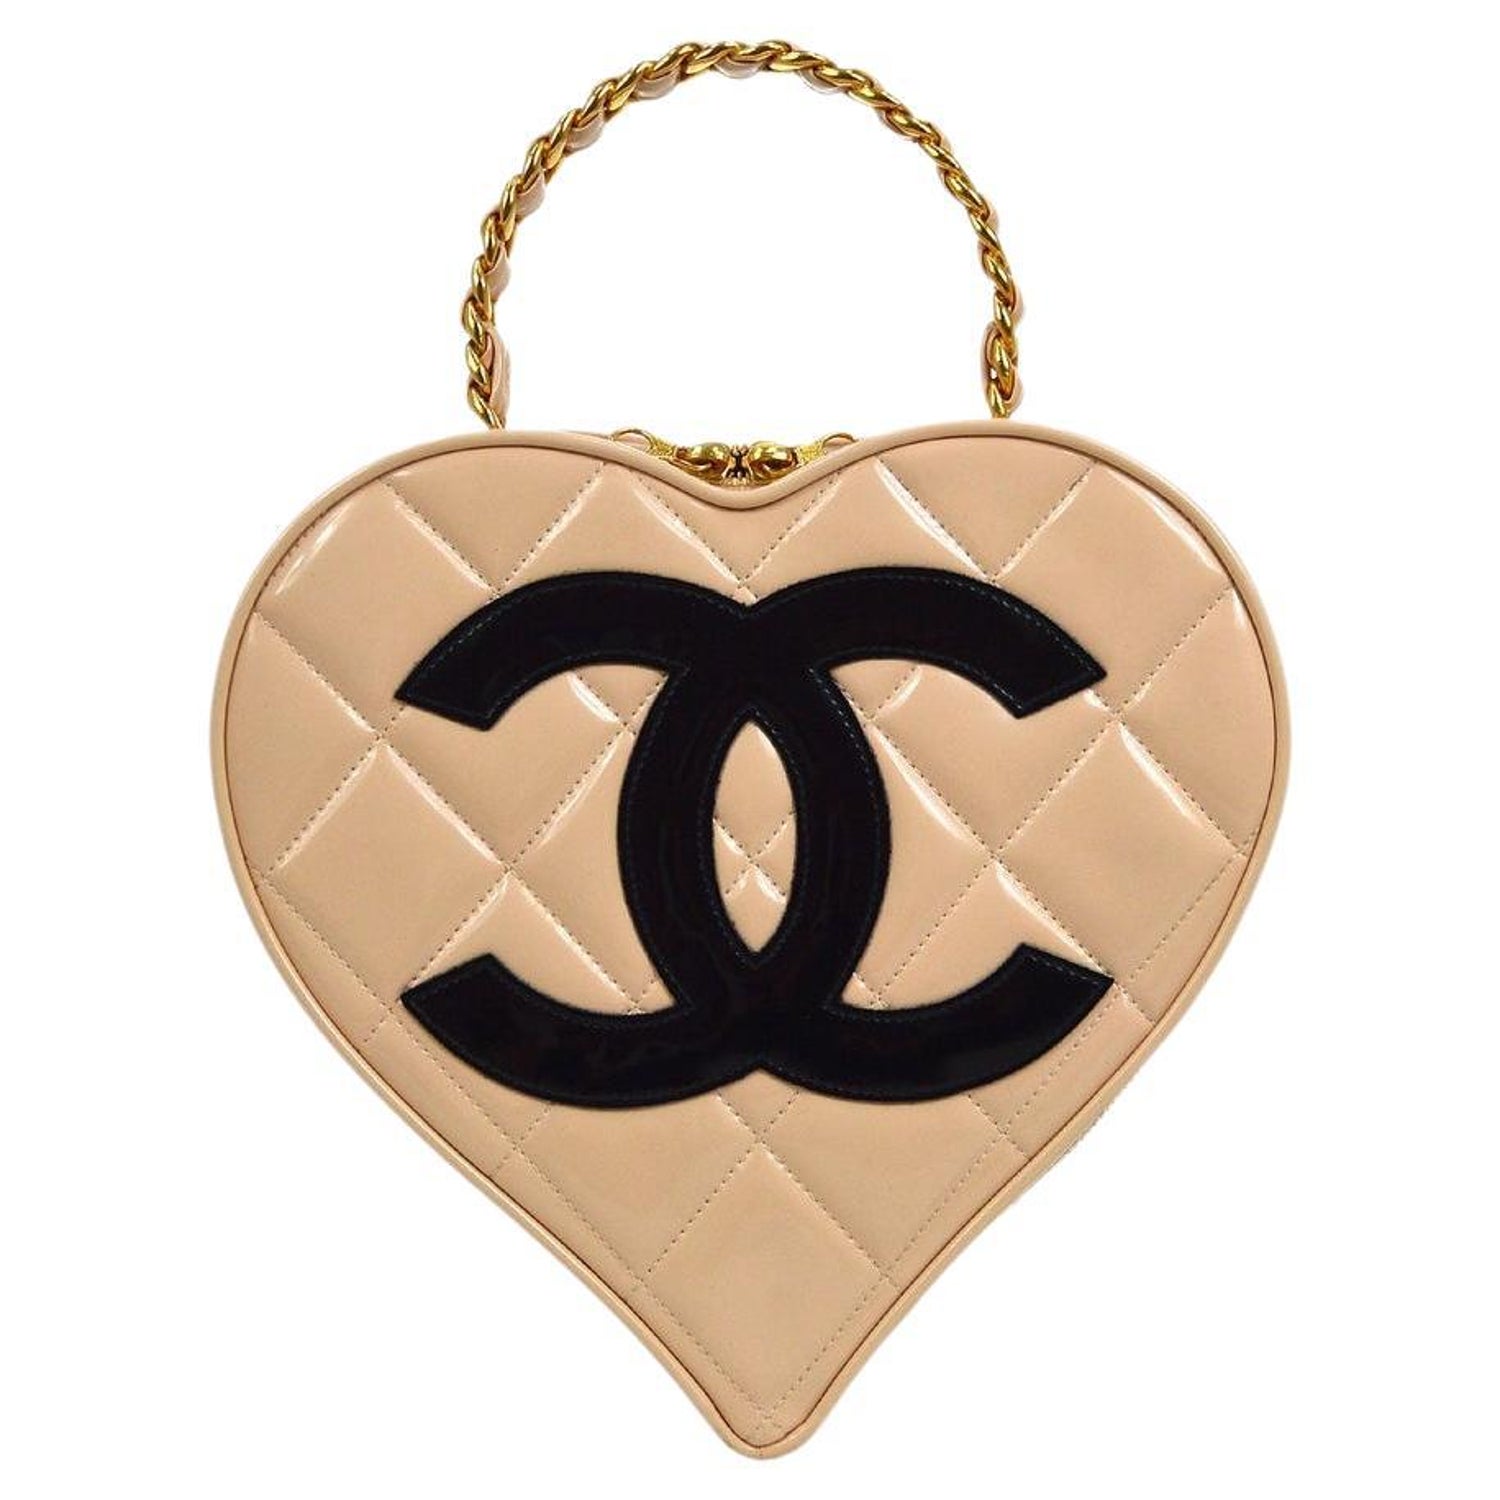 Chanel Vintage Heart Bag - 6 For Sale on 1stDibs | chanel heart bag price, vintage  chanel heart bag, heart shaped chanel bag